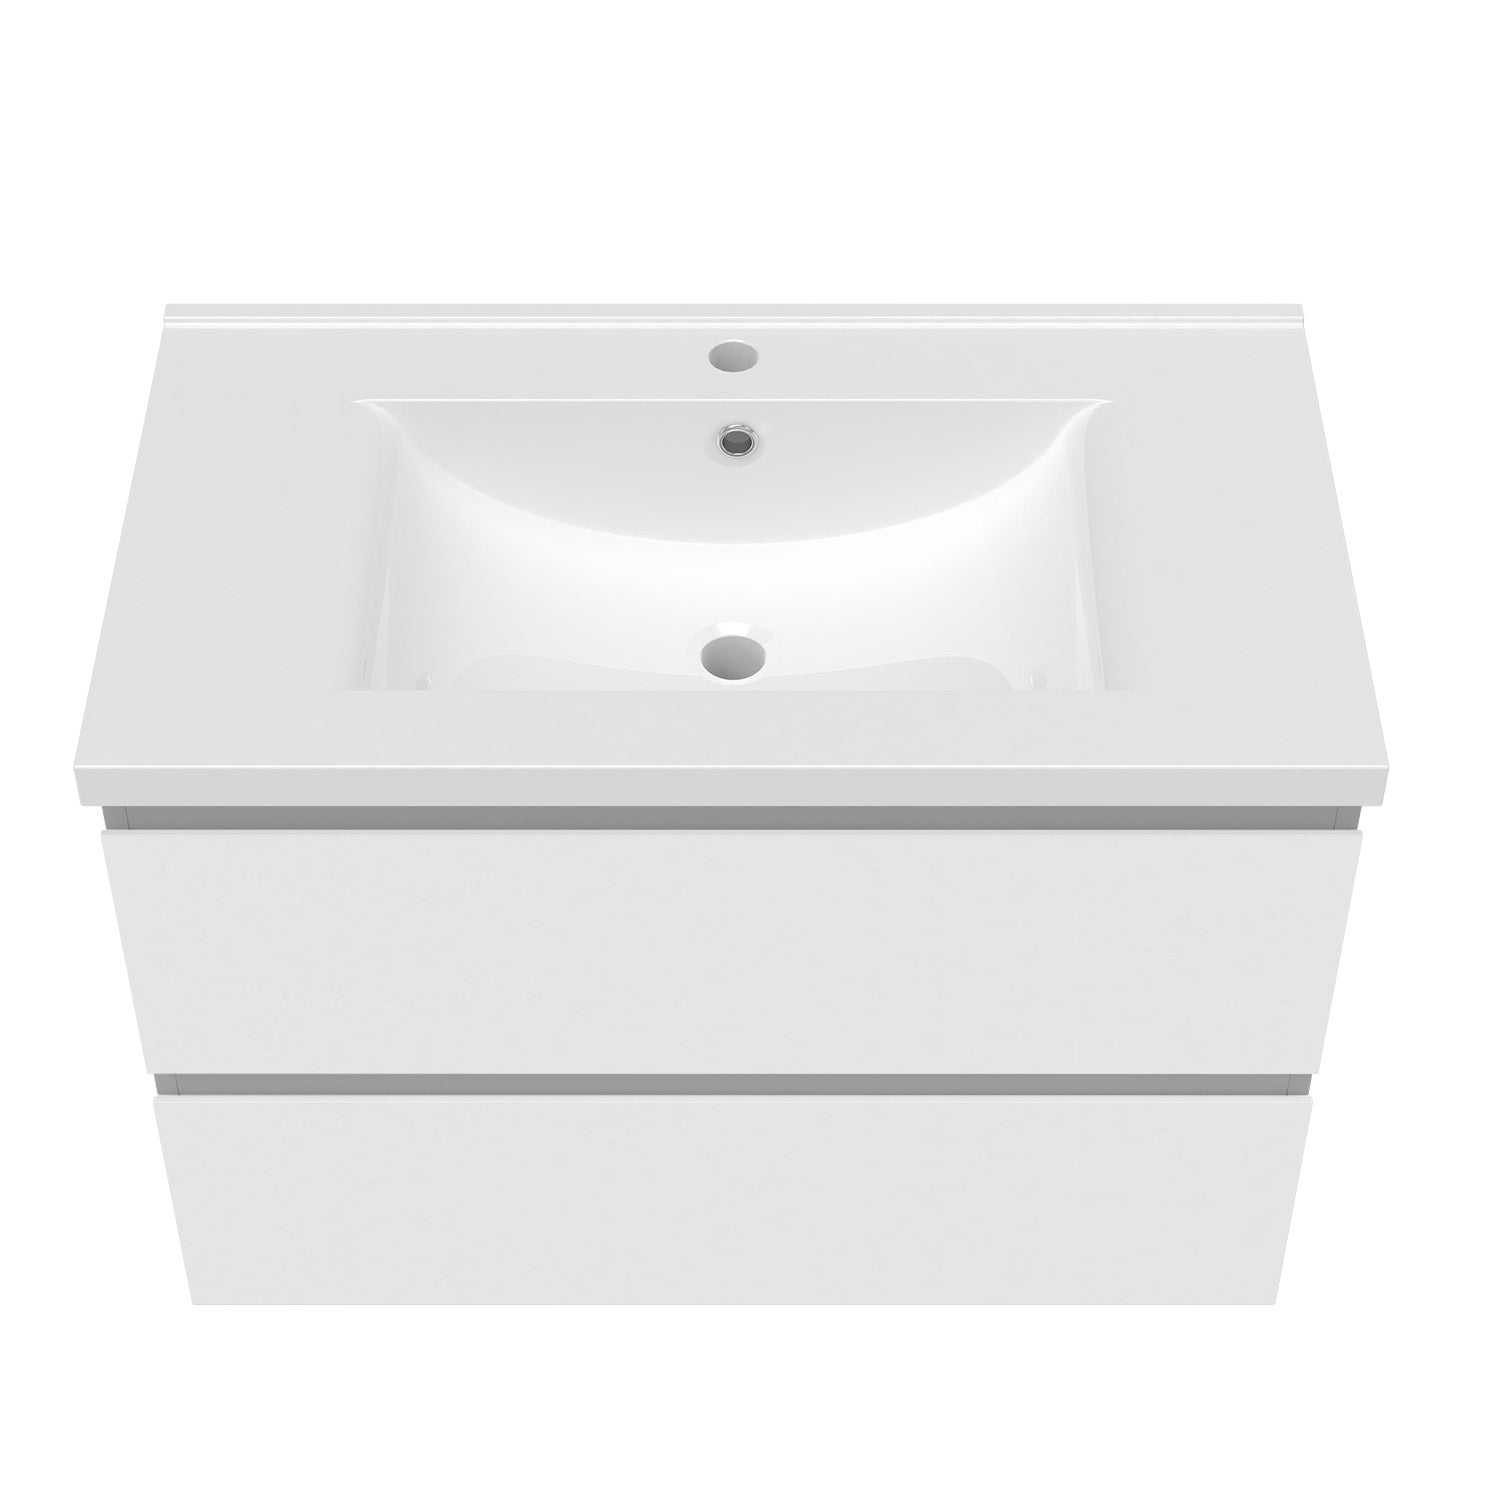 Meuble de salle de bain, Meuble de rangement avec lavabo, Meuble sous vasque suspendu, Blanc/Anthracite/Bois clair 79cm -Livraison gratuite